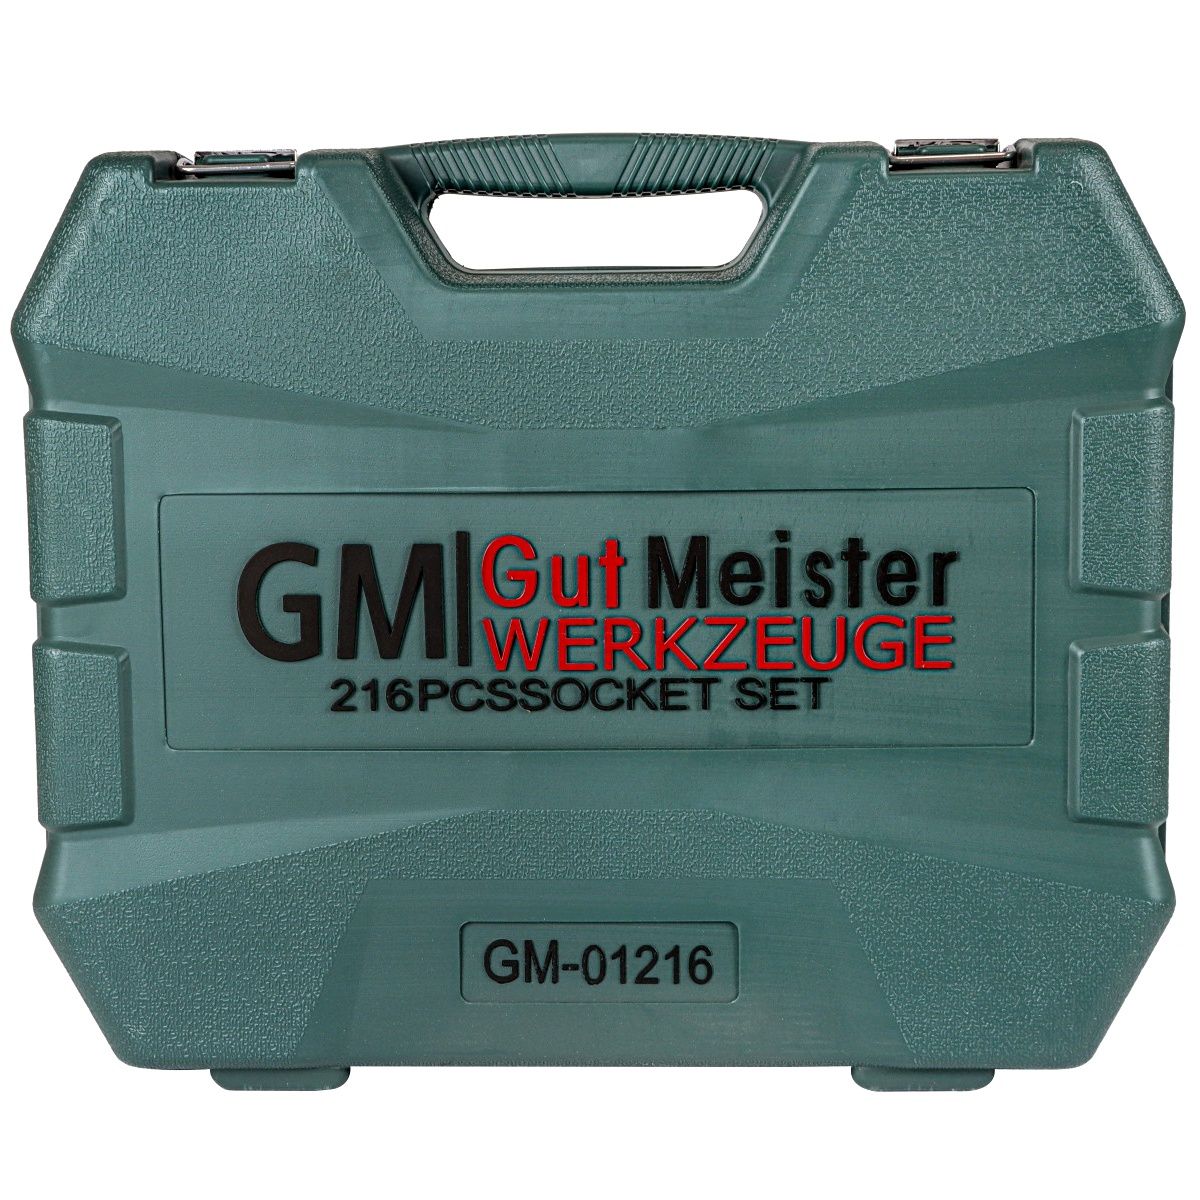 Профессиональный набор инструментов Gut Meister 216 ед. Ключи Германия